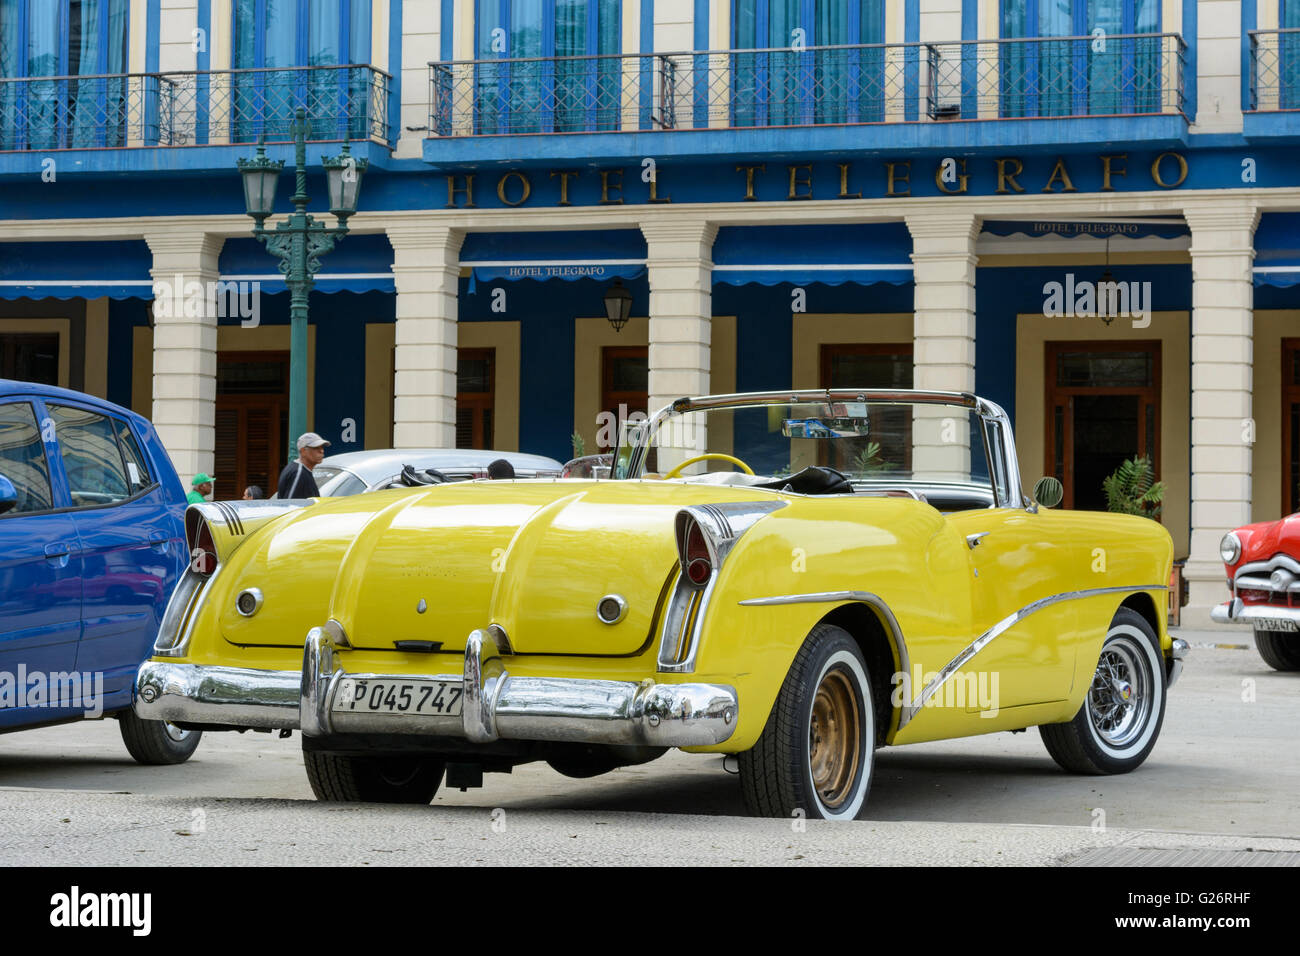 Un giallo vintage americano auto parcheggiate fuori Hotel Telegrafo, Parque Central, Havana, Cuba Foto Stock